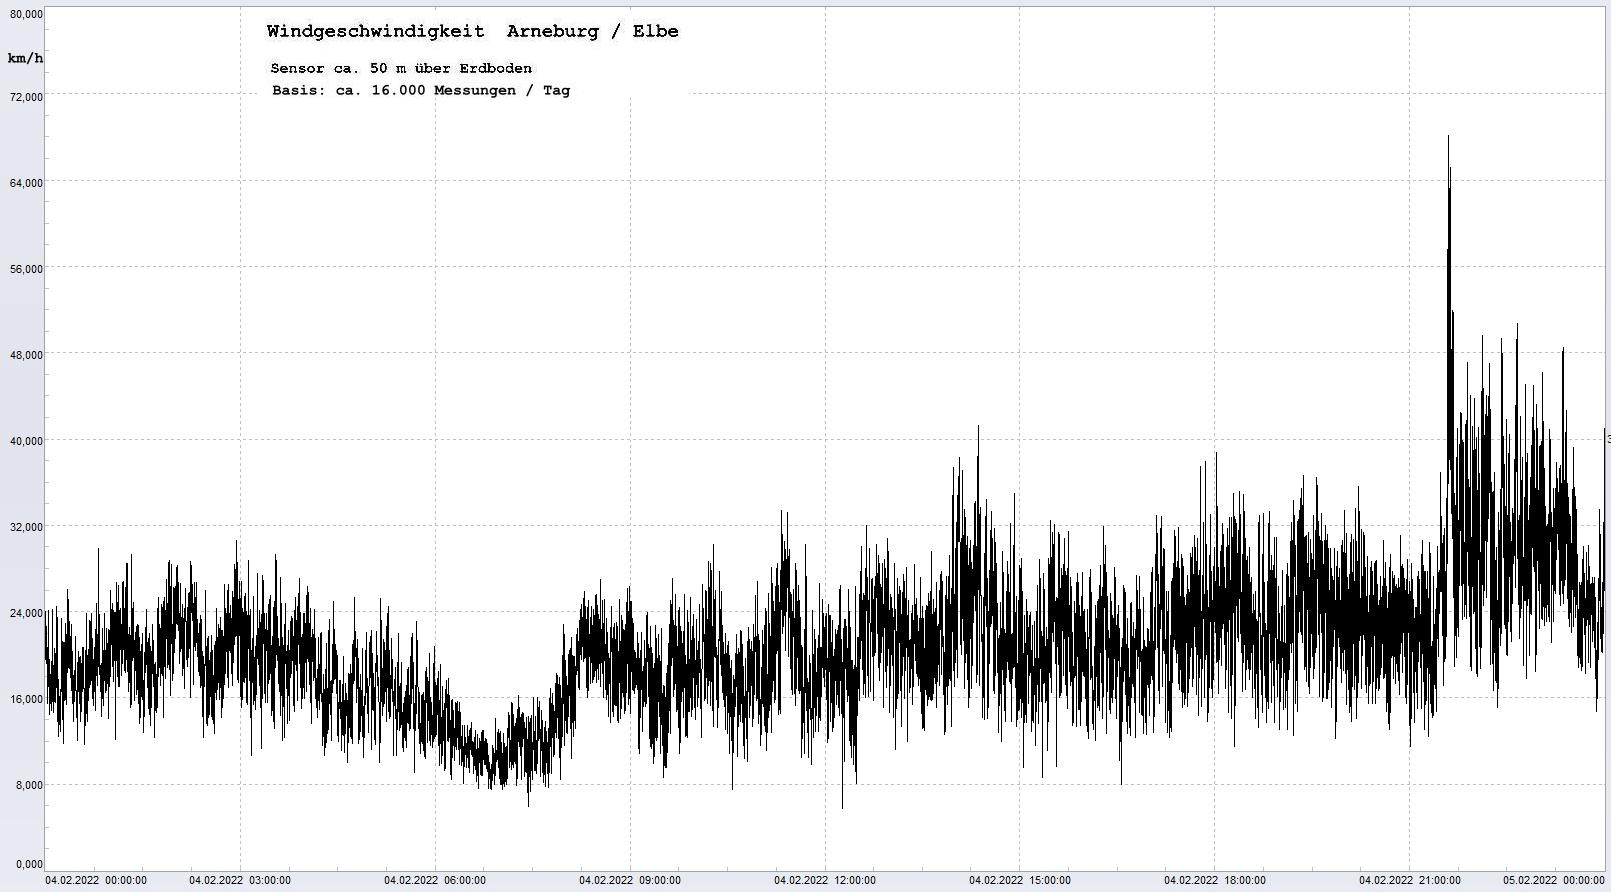 Arneburg Tages-Diagramm Winddaten, 04.02.2022
  Histogramm, Sensor auf Gebäude, ca. 50 m über Erdboden, Basis: 5s-Aufzeichnung